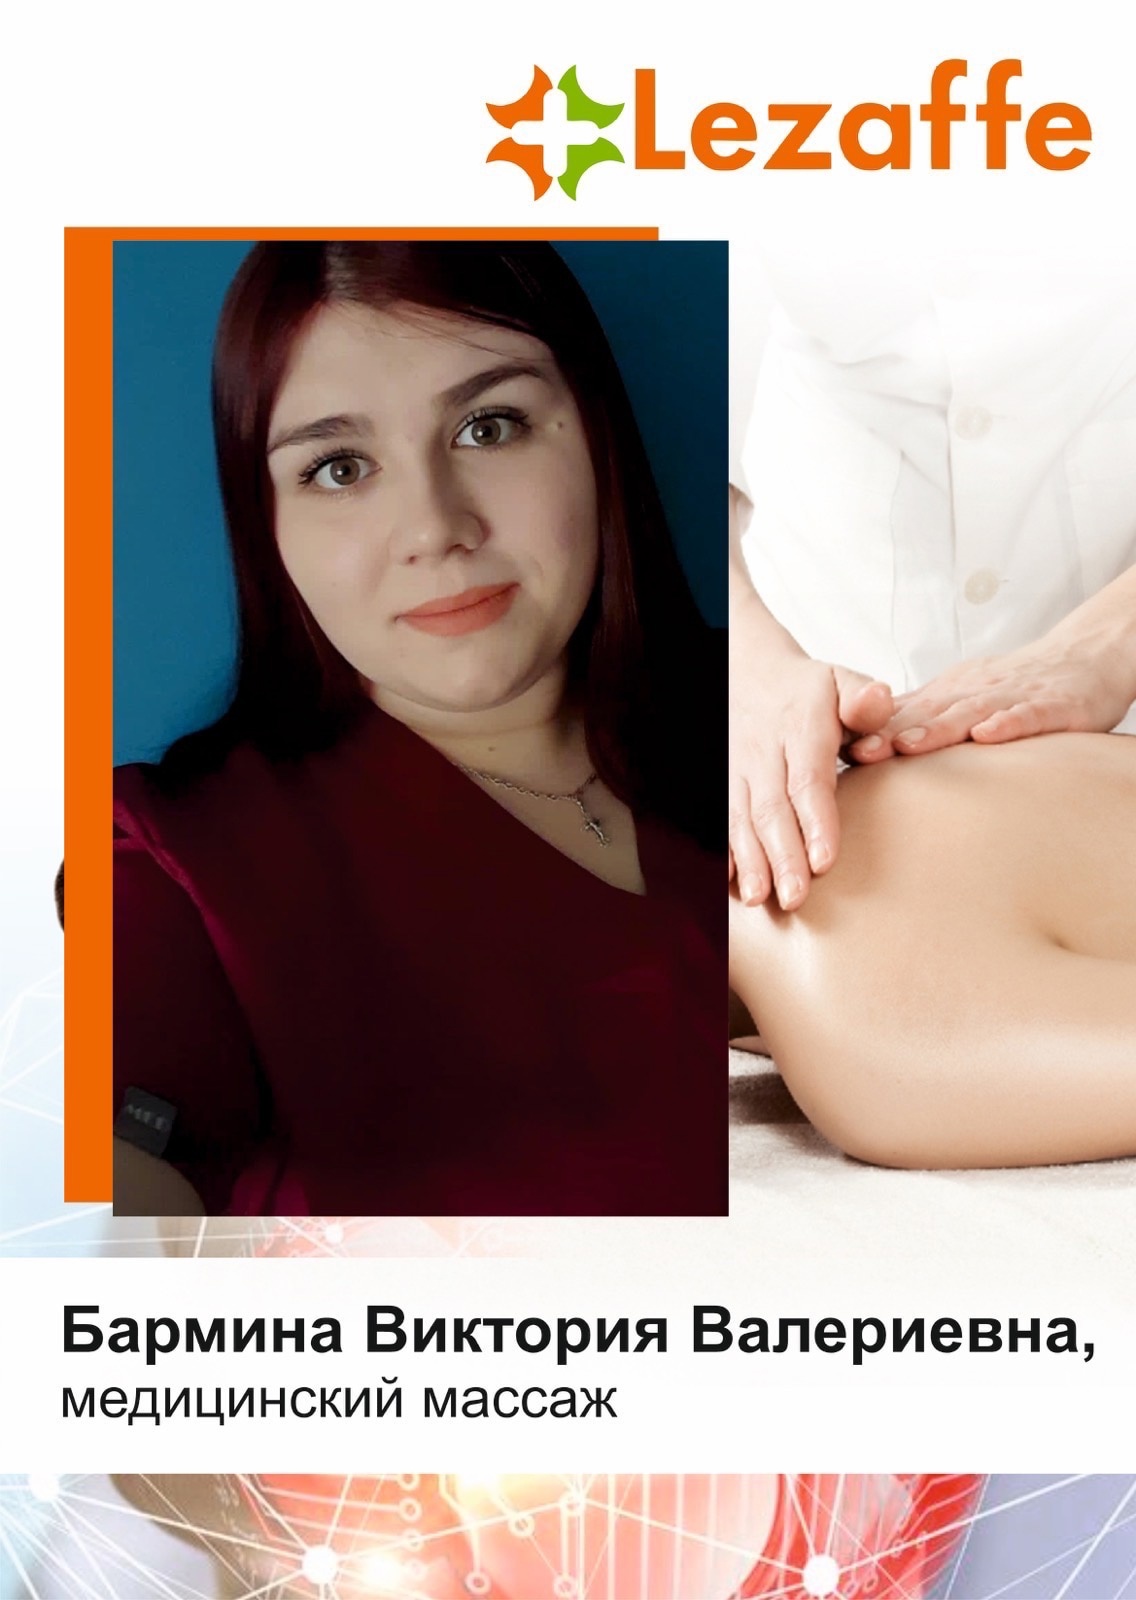 Бармина Виктория Валериевна - медицинский массаж в клинике Lezaffe г. Югорск